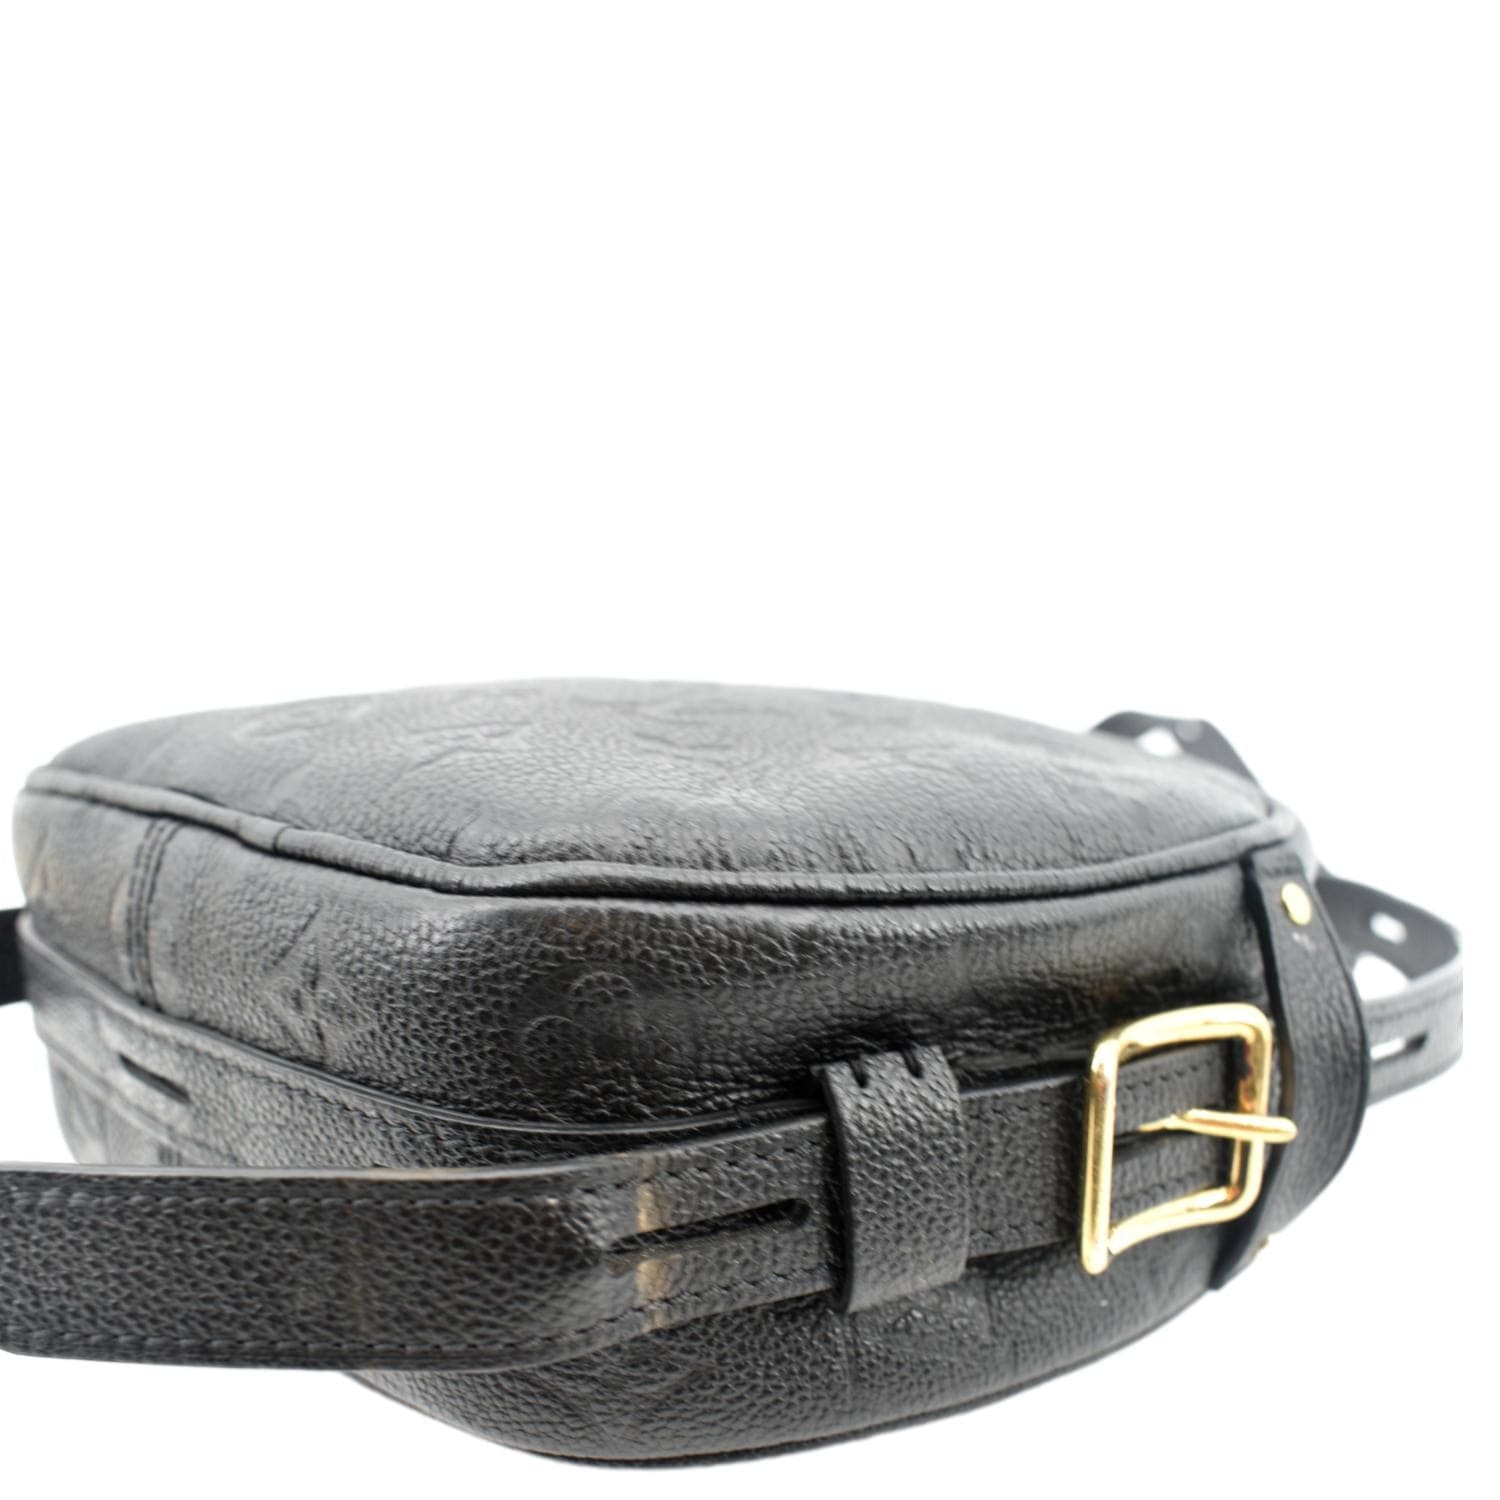 Louis Vuitton Bag Boîte à Chapeau Shoulder bag 389274